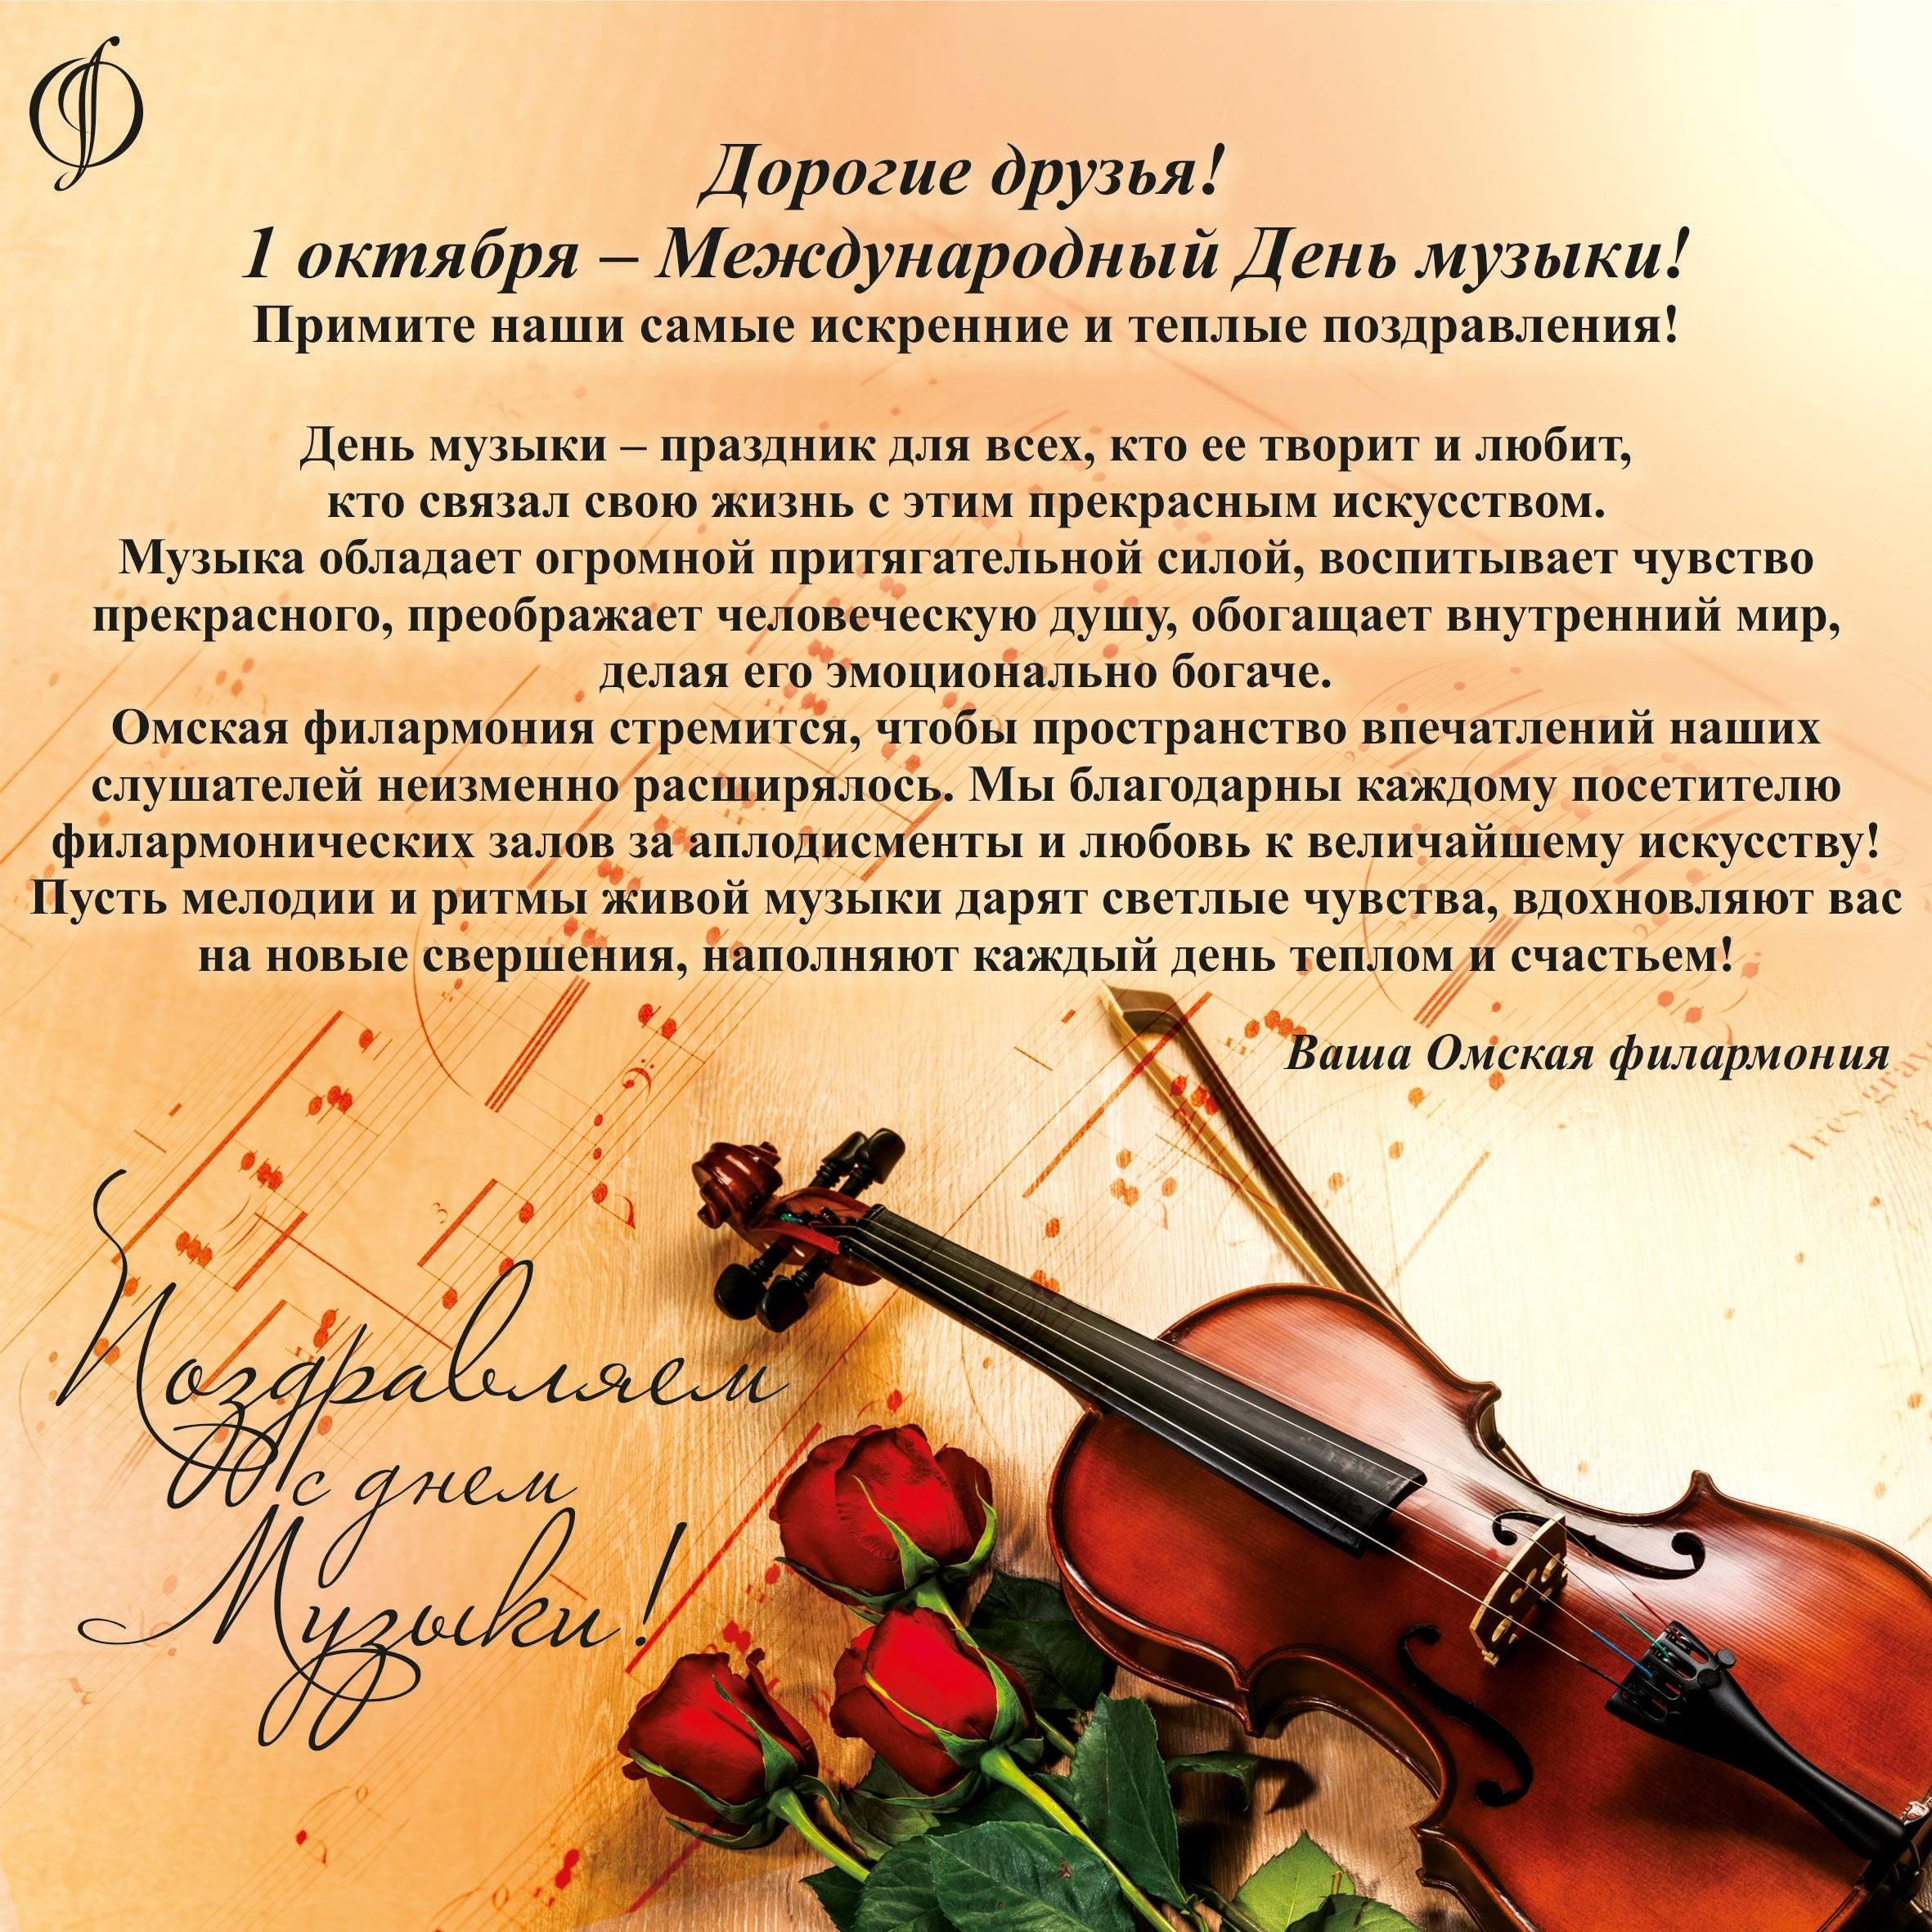 С днем рождения женщине музыканту • полный список поздравлений и пожеланий на любой праздник или торжество